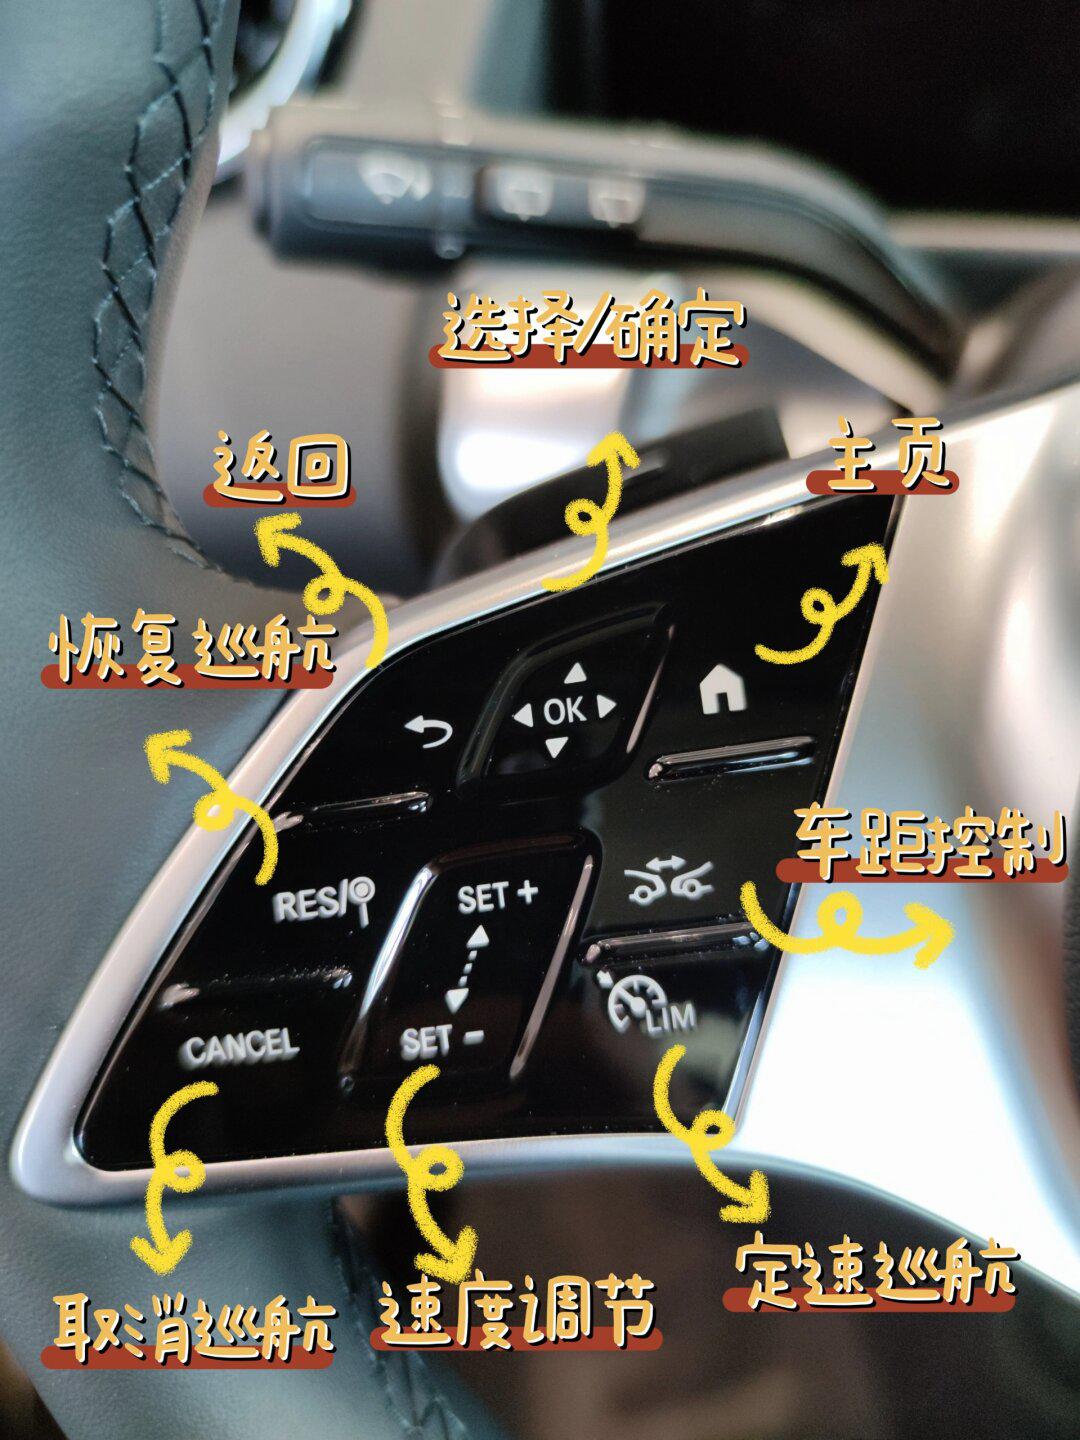 车辆功能按键图解图片